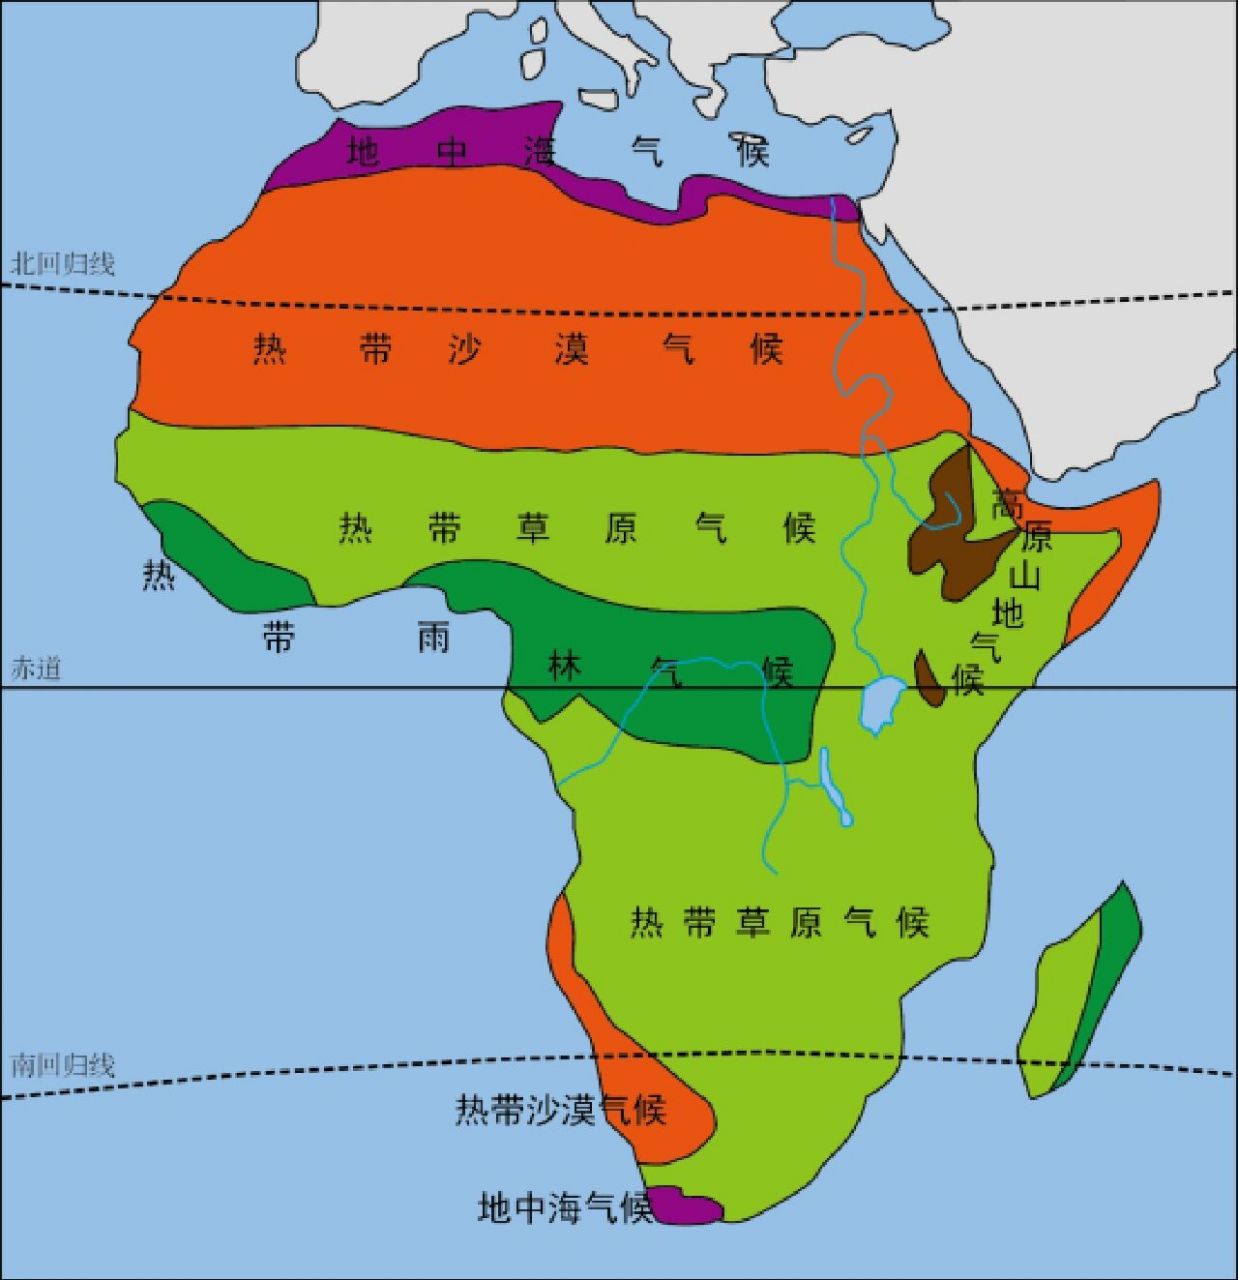 非洲的主要气候类型图片